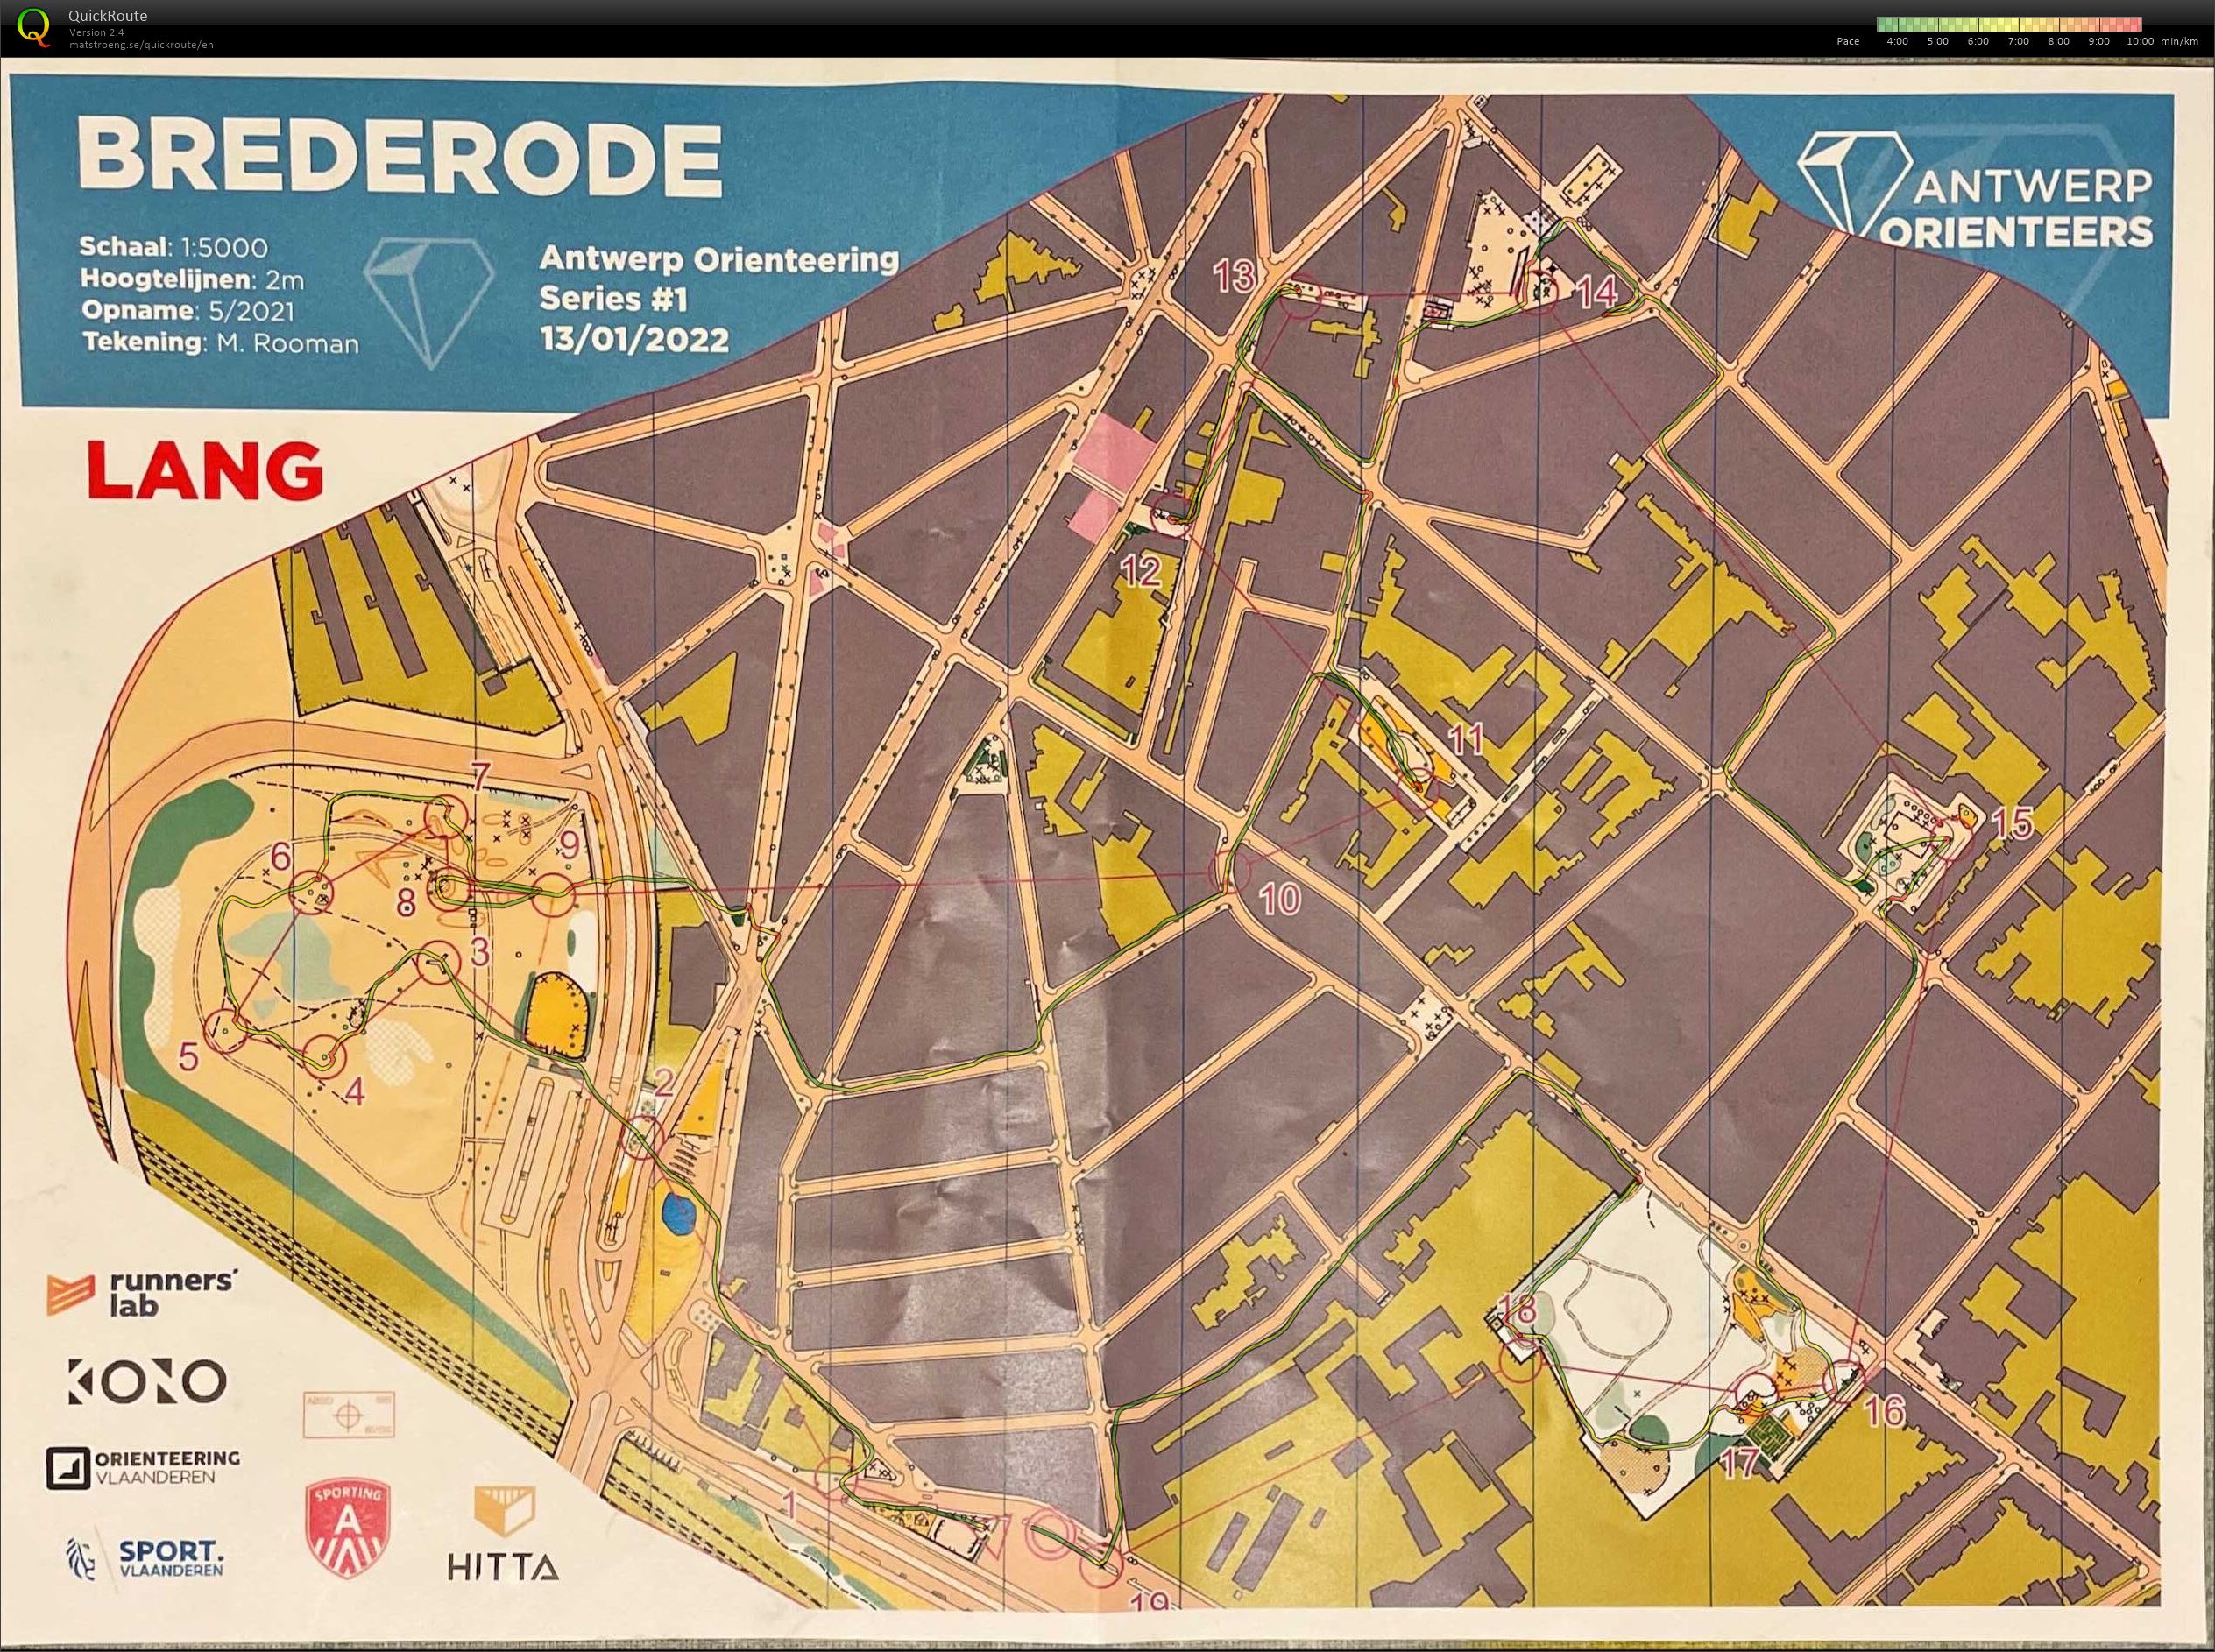 Antwerp Orienteering Series - Brederode - Lang (13.01.2022)